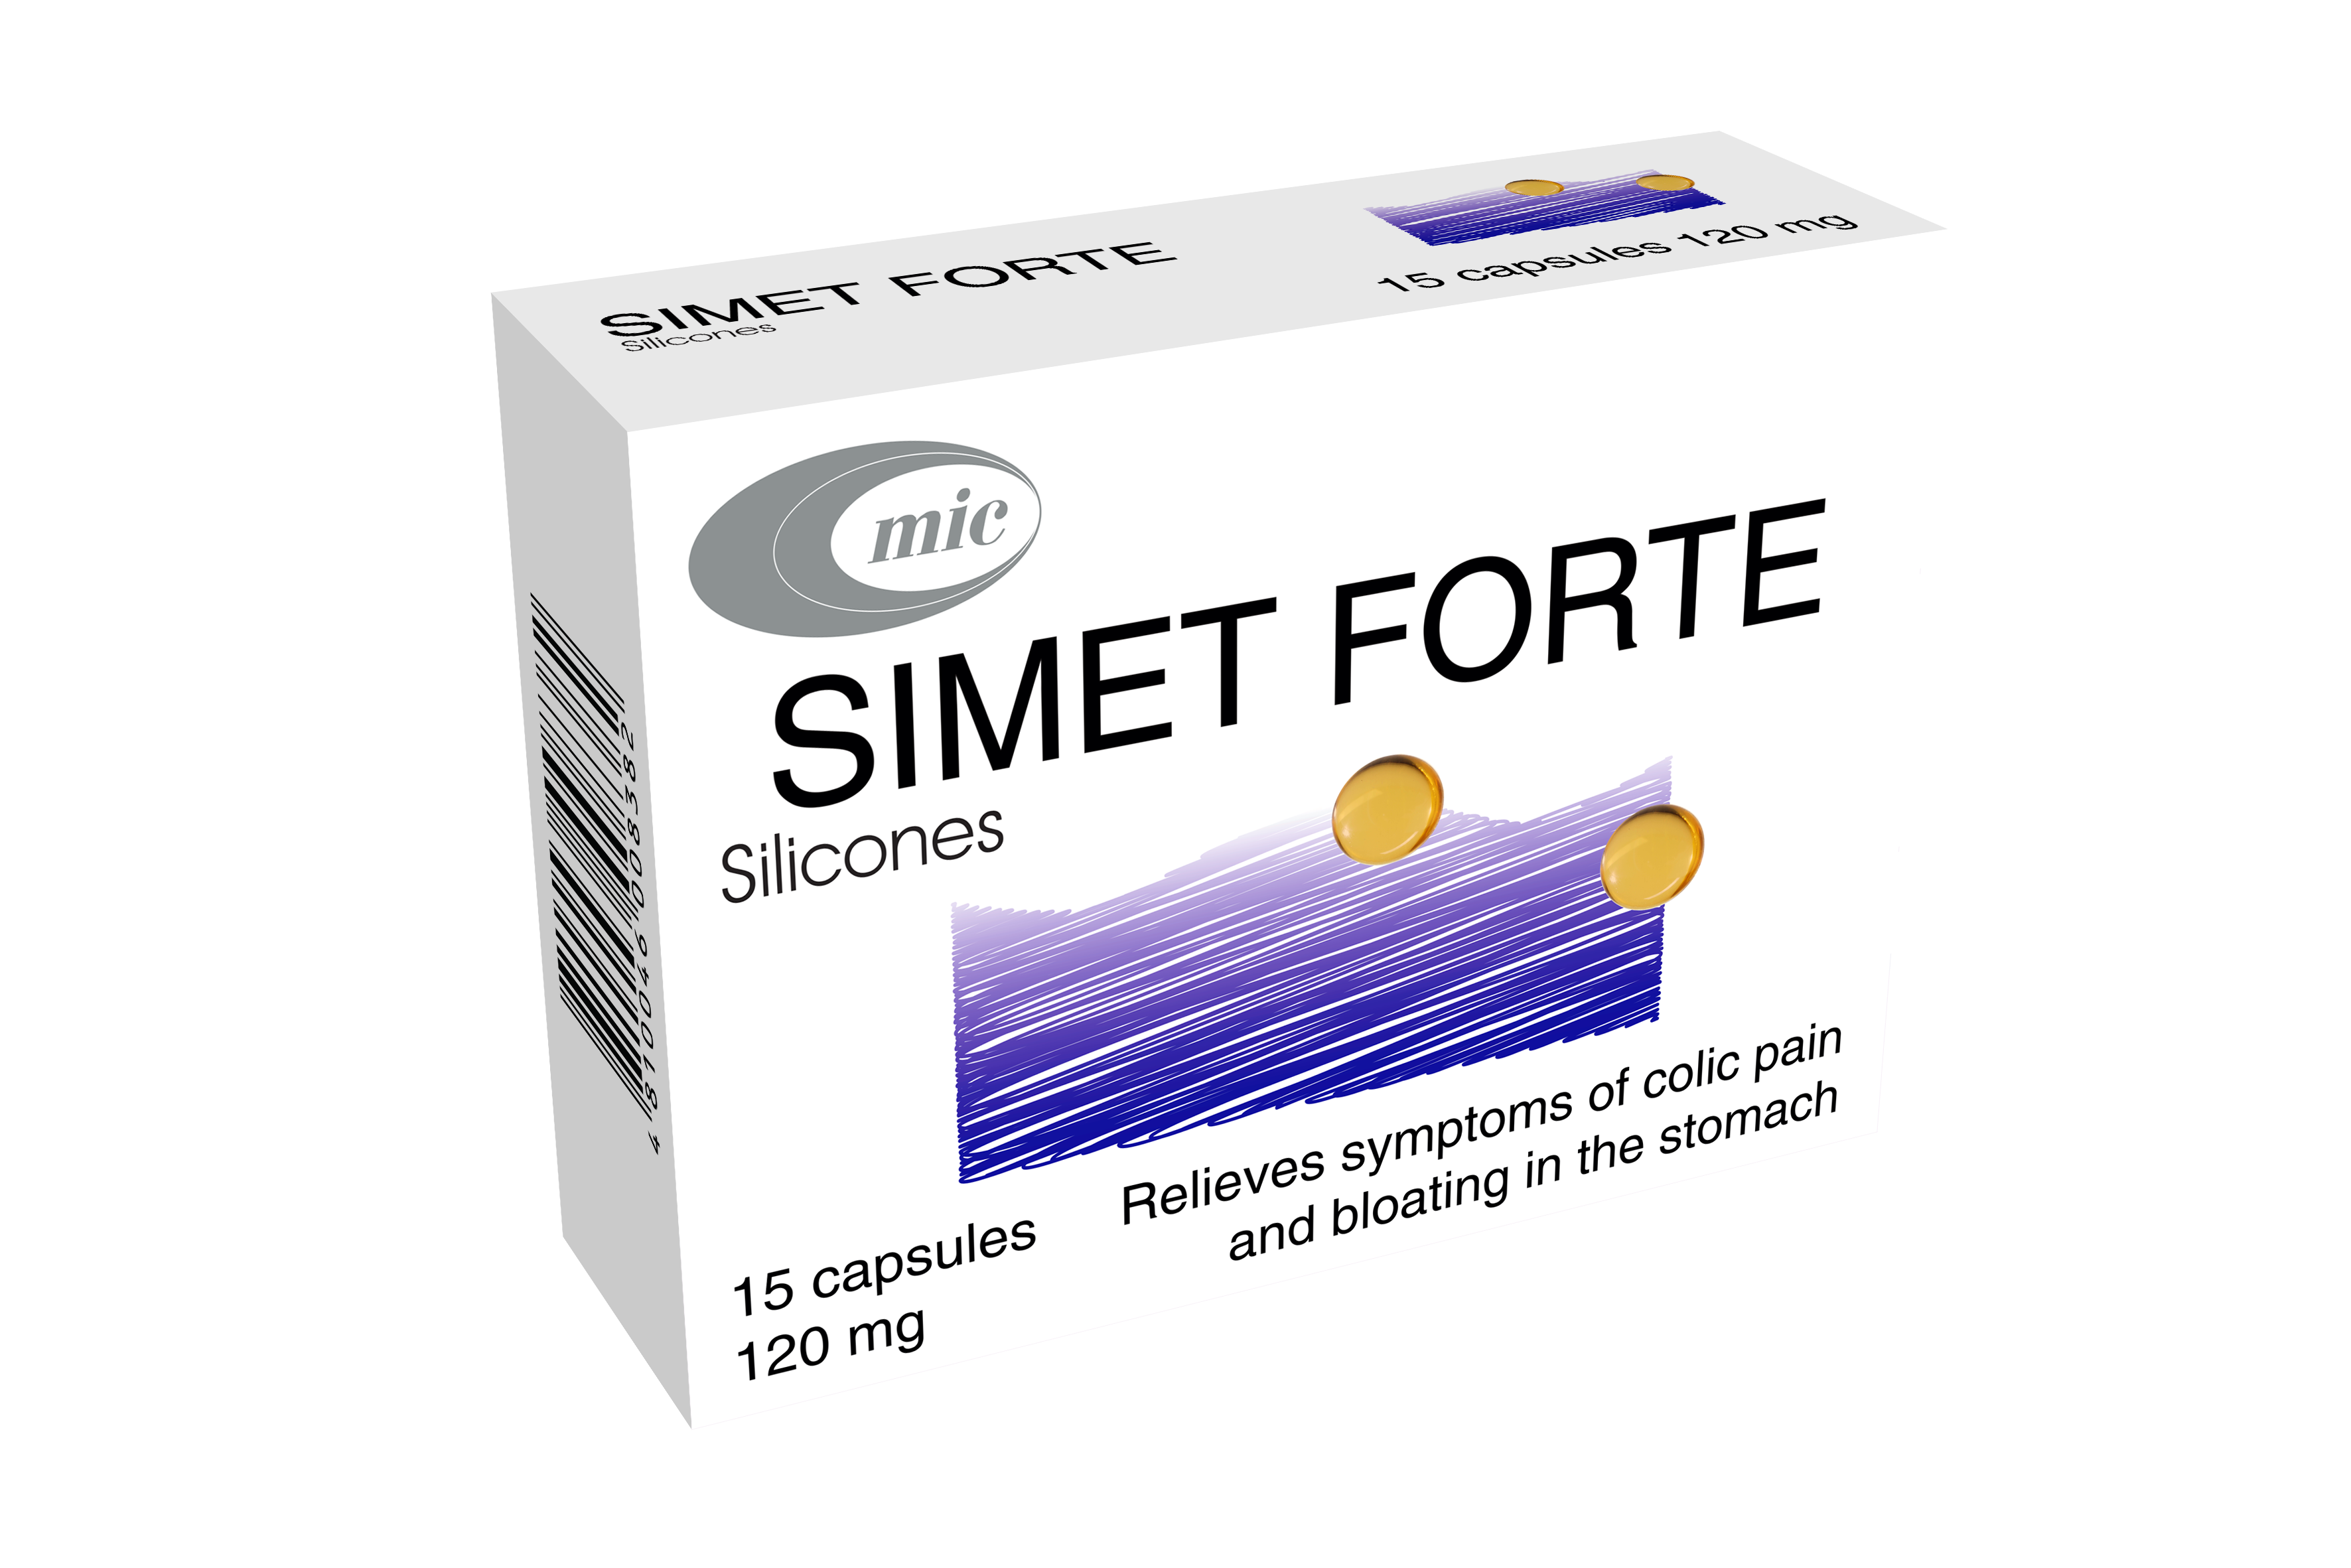 Registered a new drug SIMET FORTE, capsules 120 mg, #15